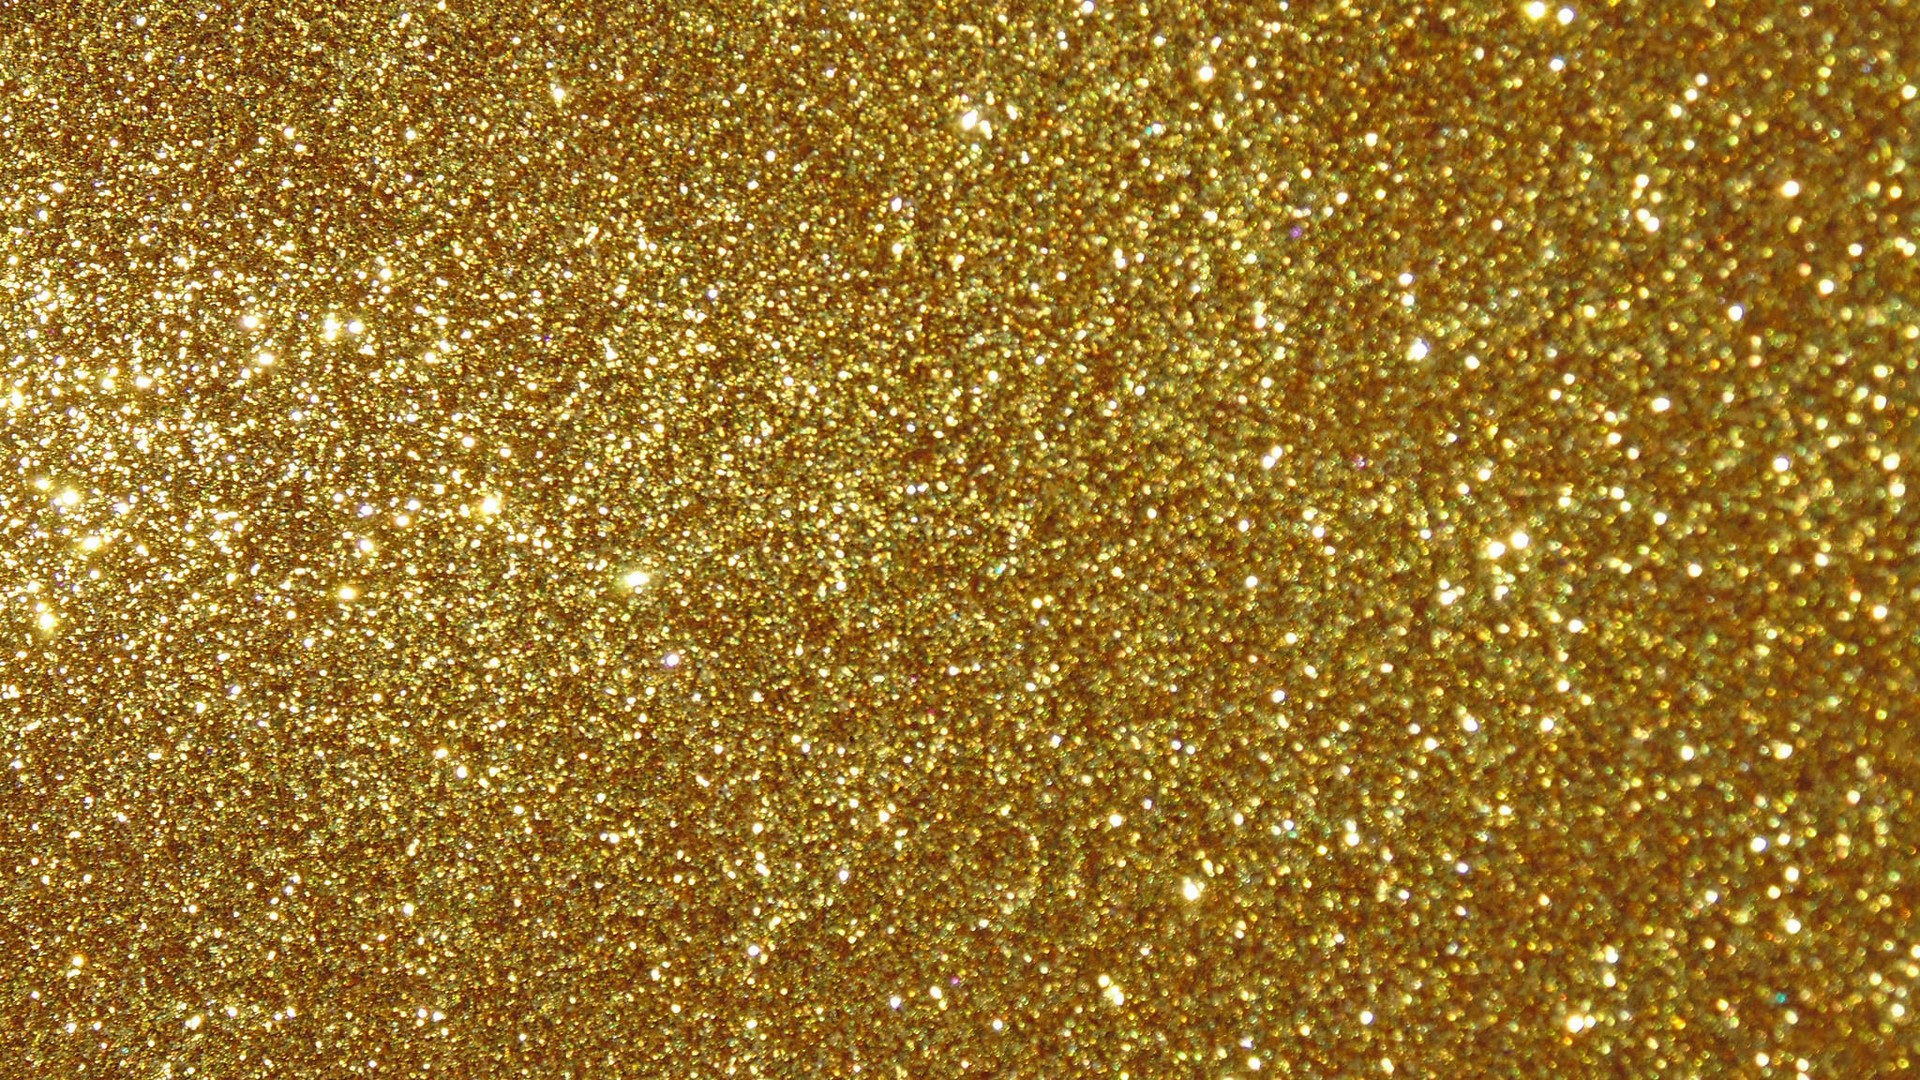 Gold Glitter Desktop Backgrounds 1920x1080